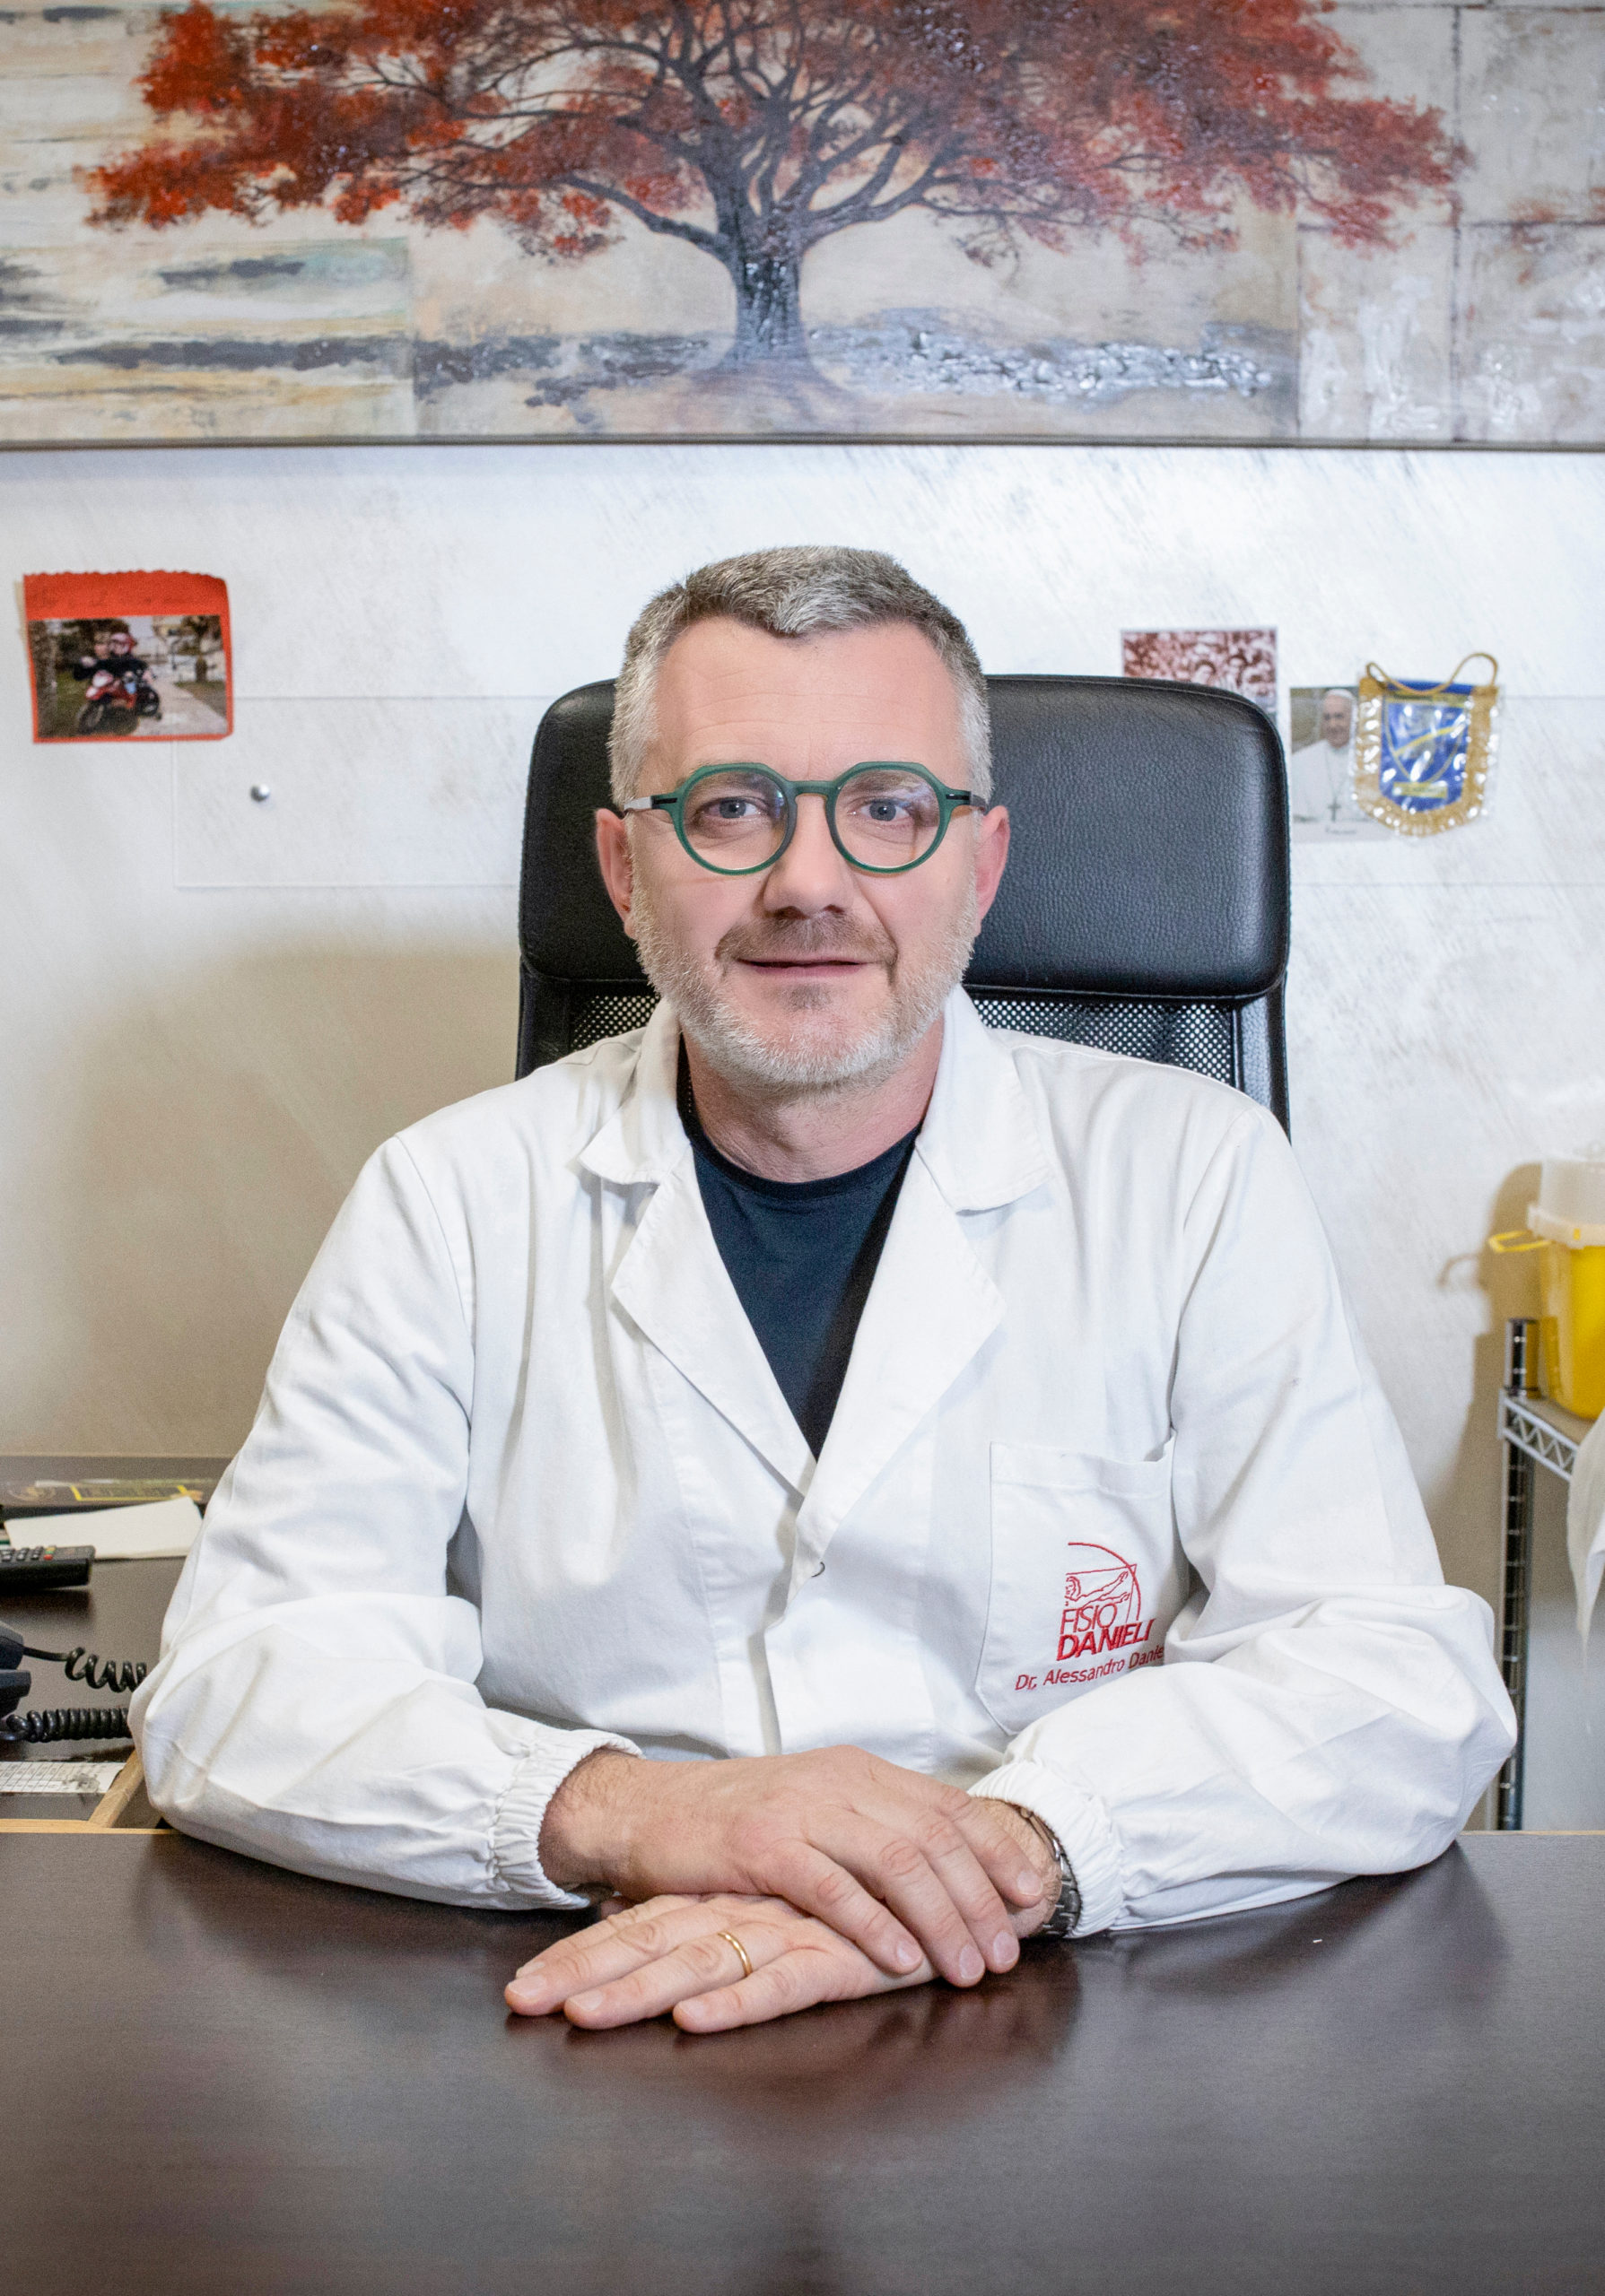 Dr. Alessandro Danieli